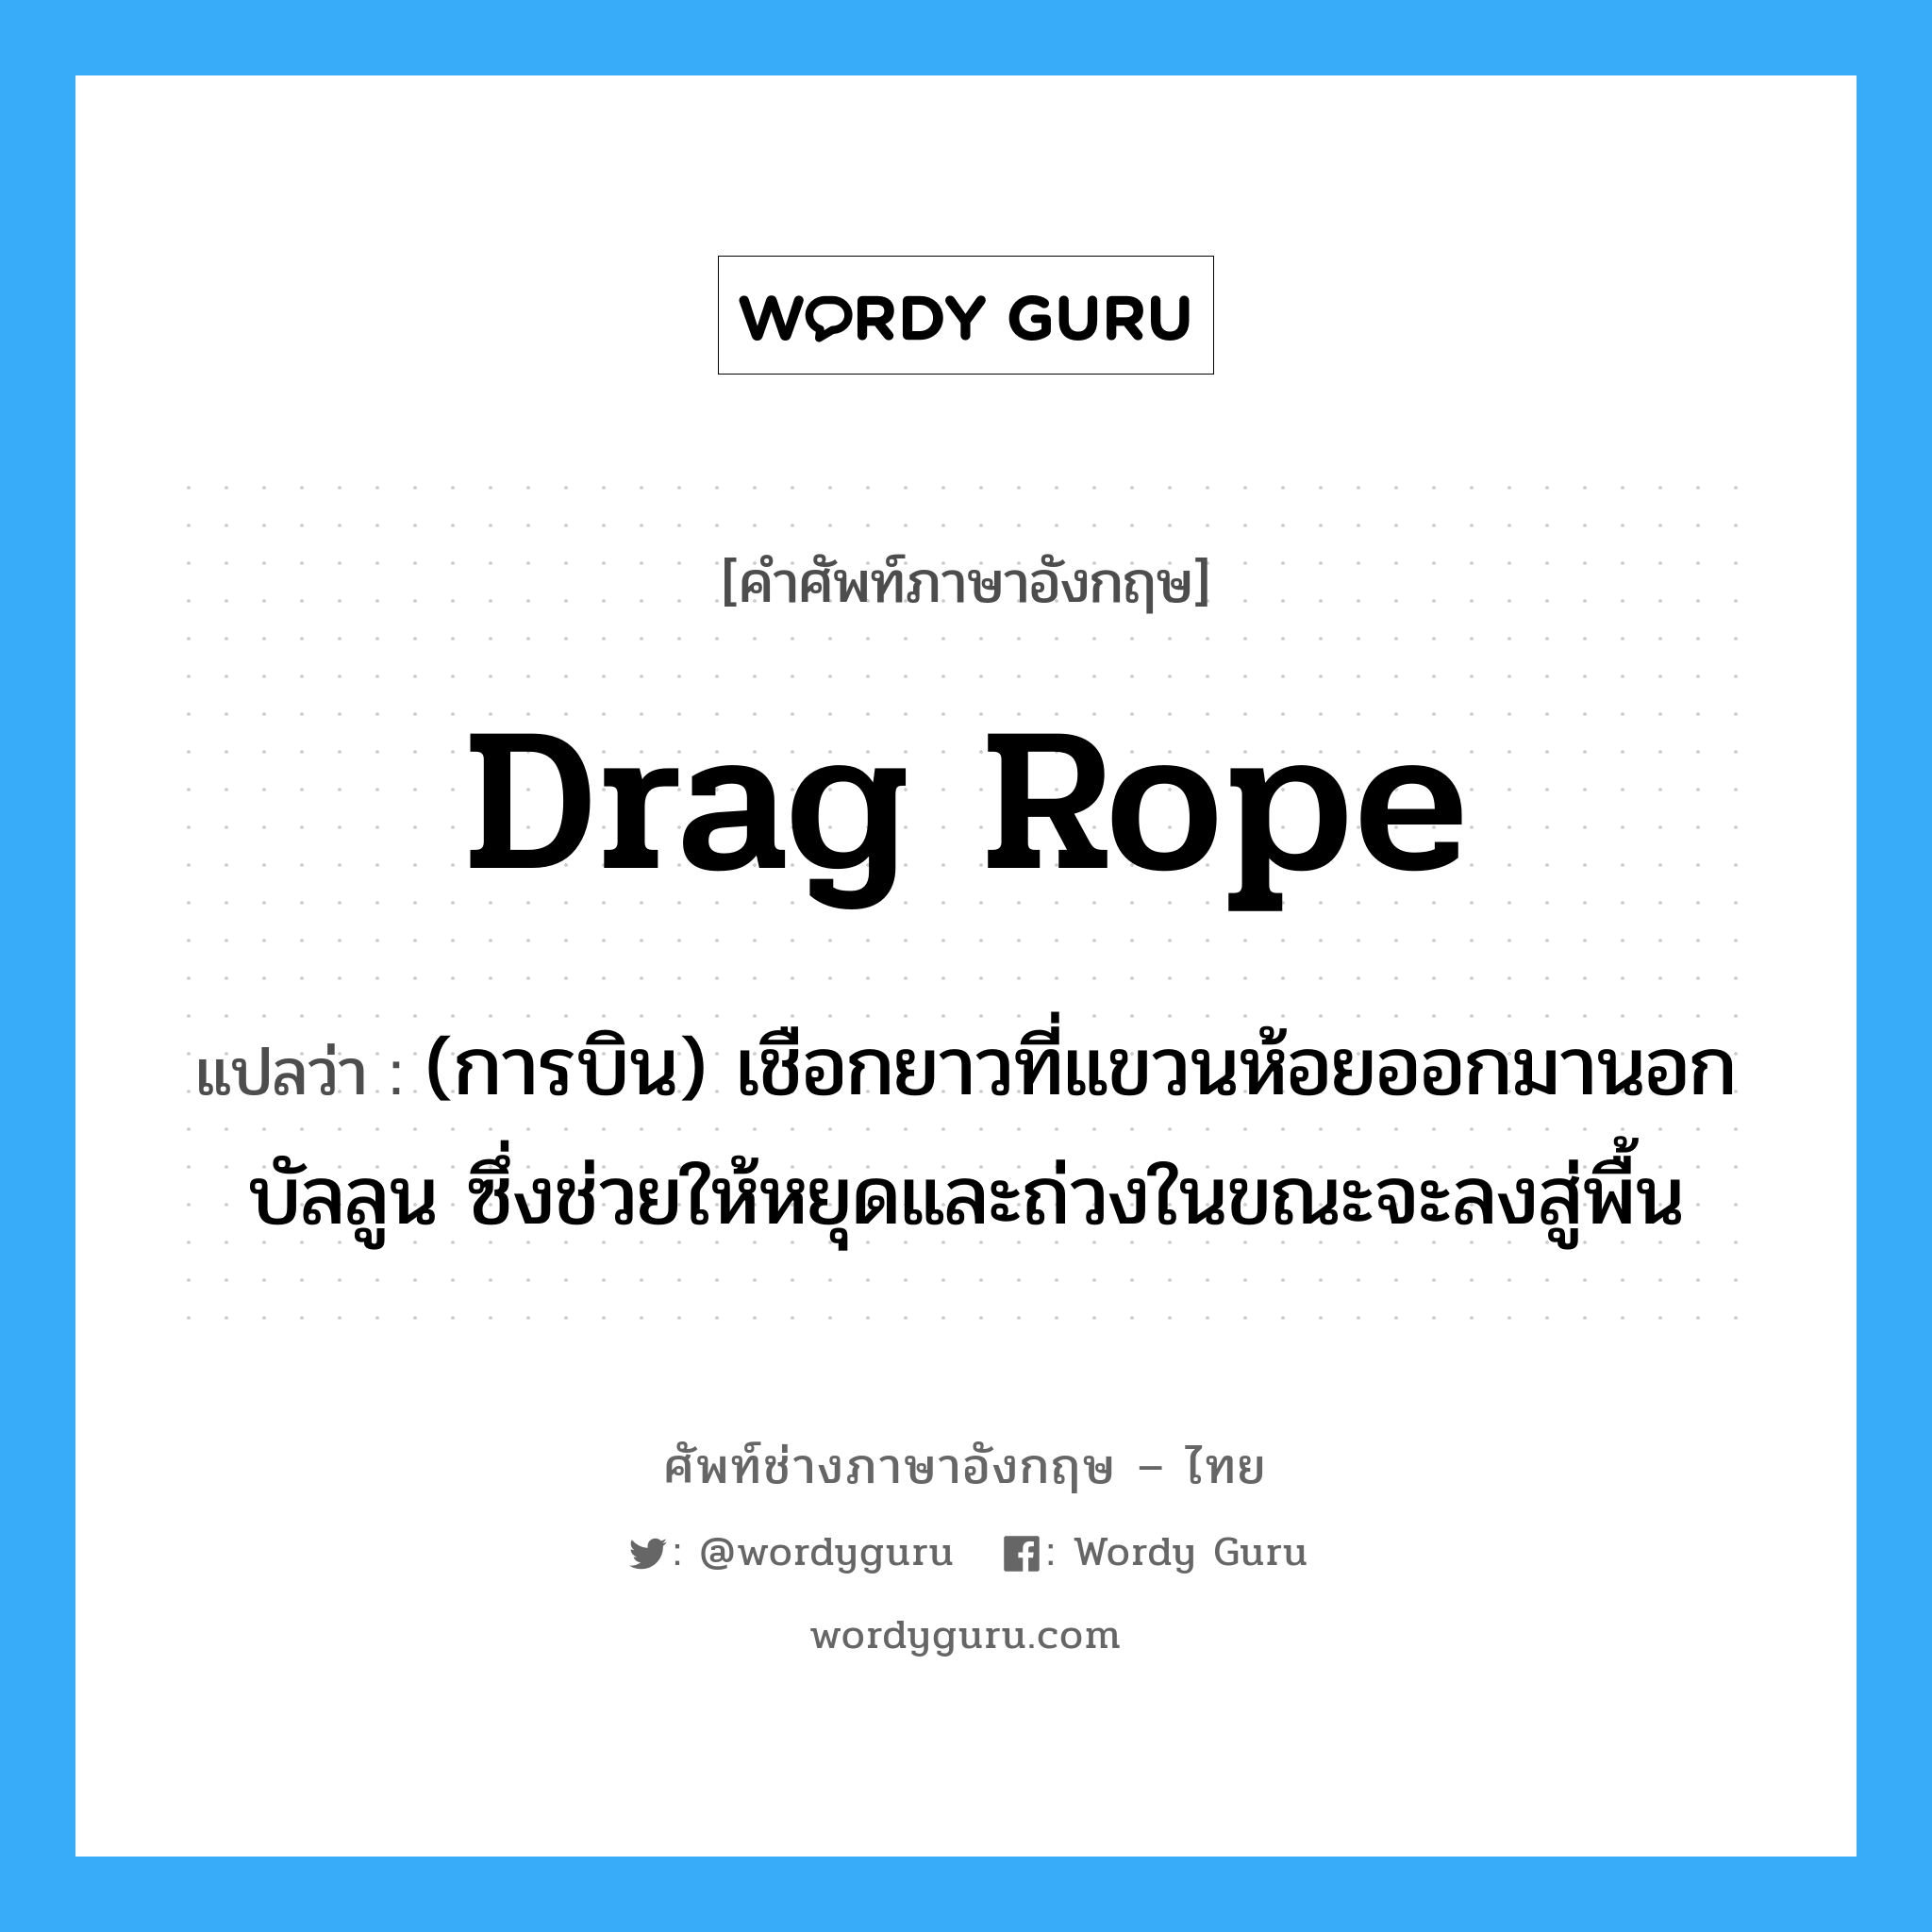 drag rope แปลว่า?, คำศัพท์ช่างภาษาอังกฤษ - ไทย drag rope คำศัพท์ภาษาอังกฤษ drag rope แปลว่า (การบิน) เชือกยาวที่แขวนห้อยออกมานอกบัลลูน ซึ่งช่วยให้หยุดและถ่วงในขณะจะลงสู่พื้น